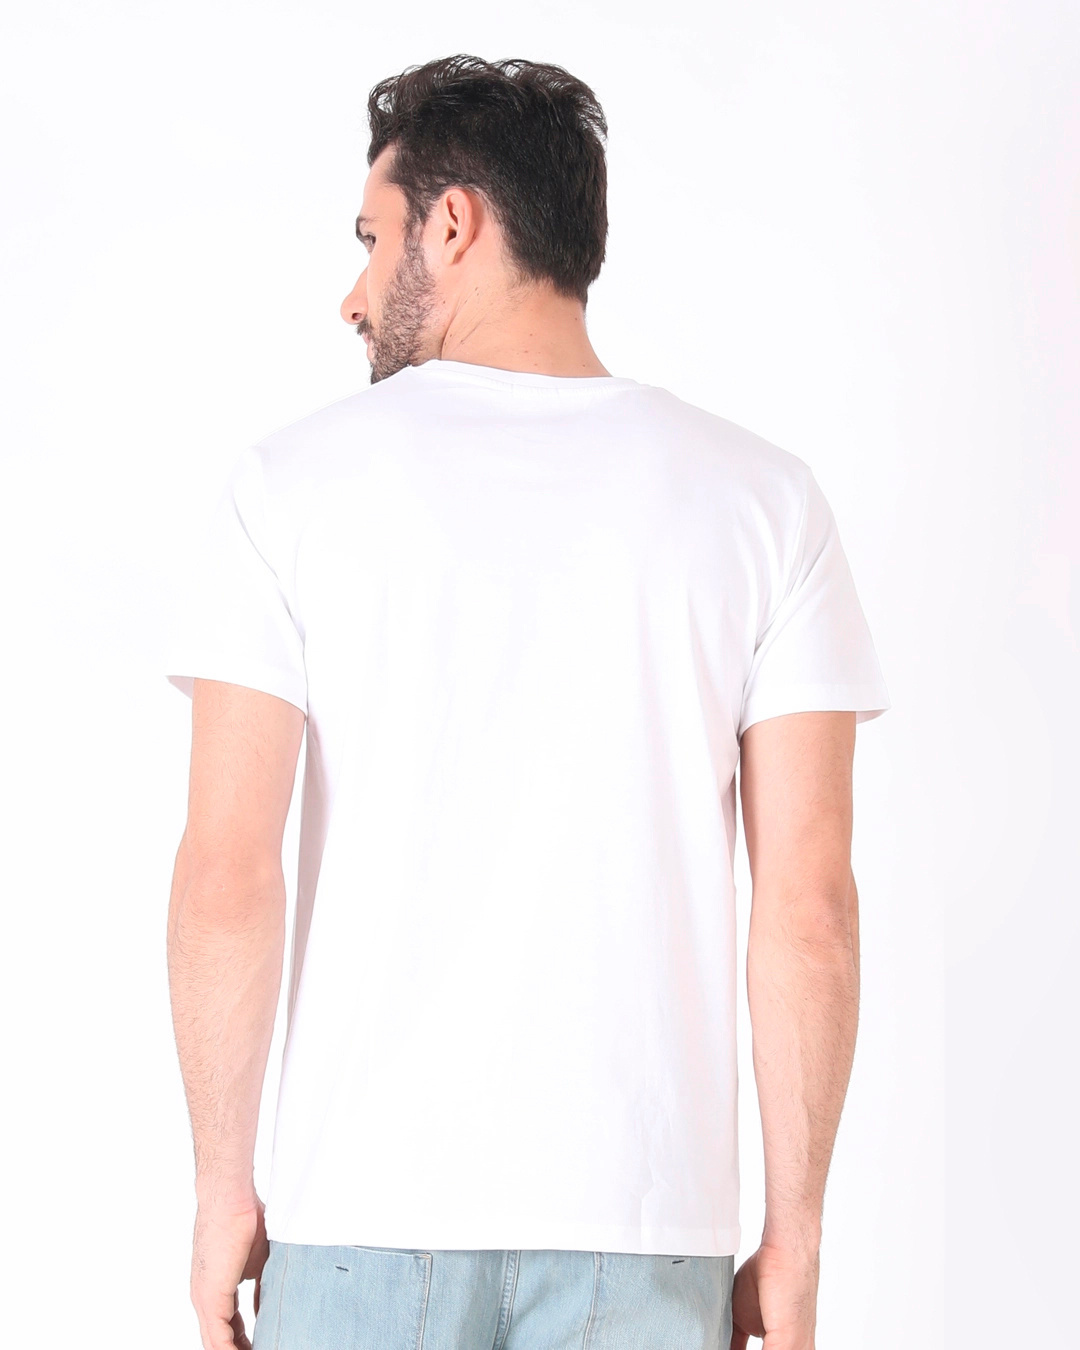 Buy Men's White Beast Mode Graphic Printed T-shirt Online at Bewakoof